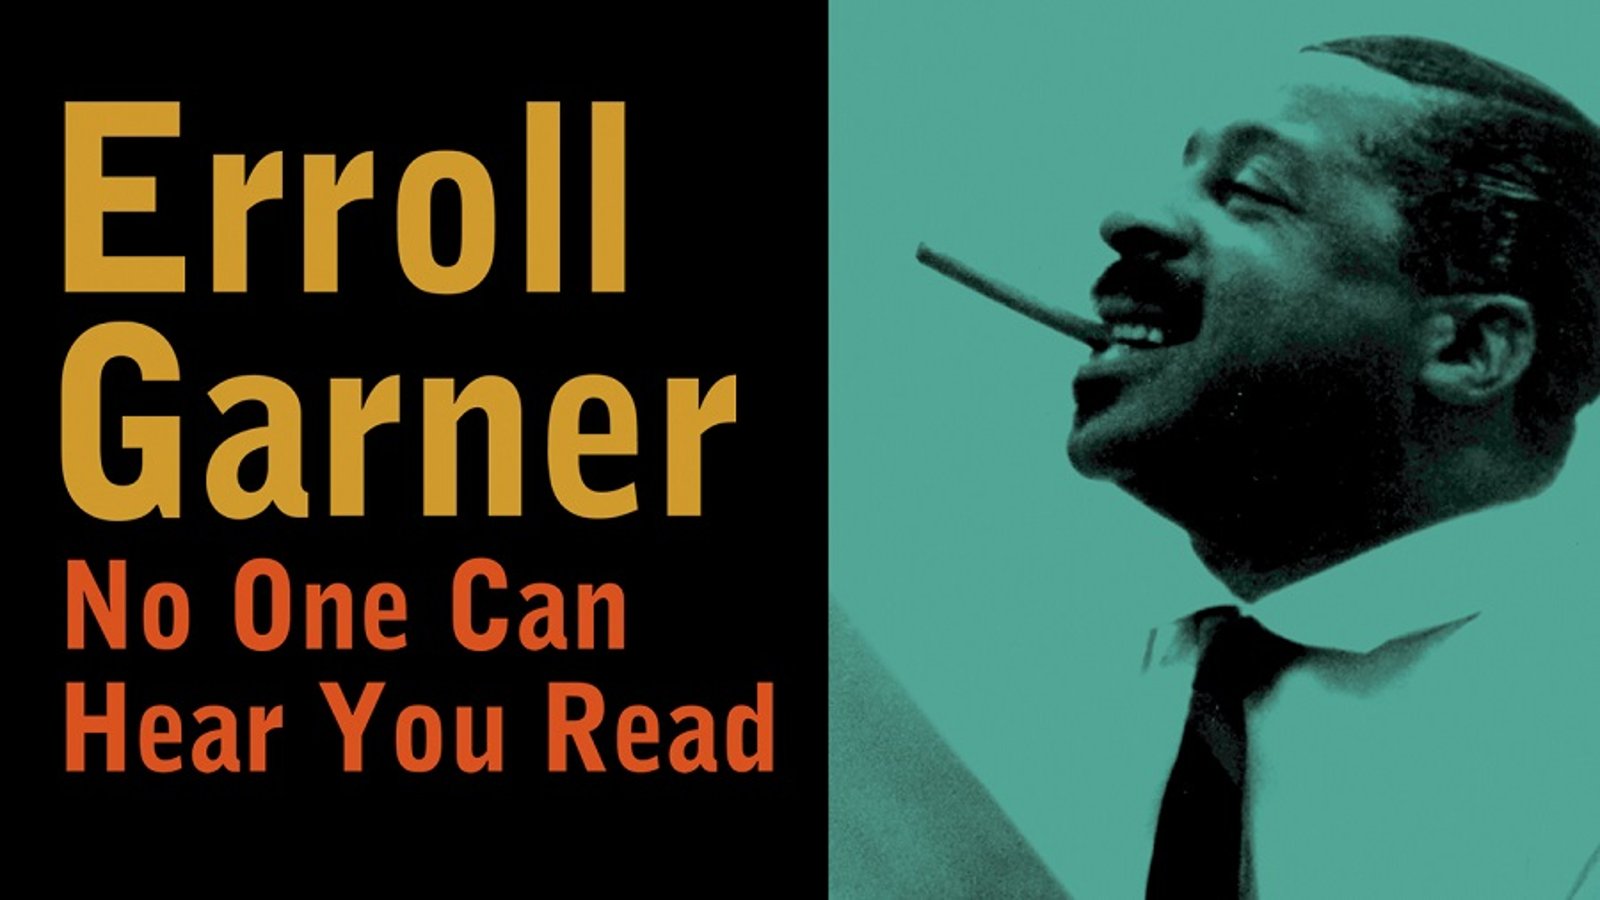 Erroll Garner: No One Can Hear You Read